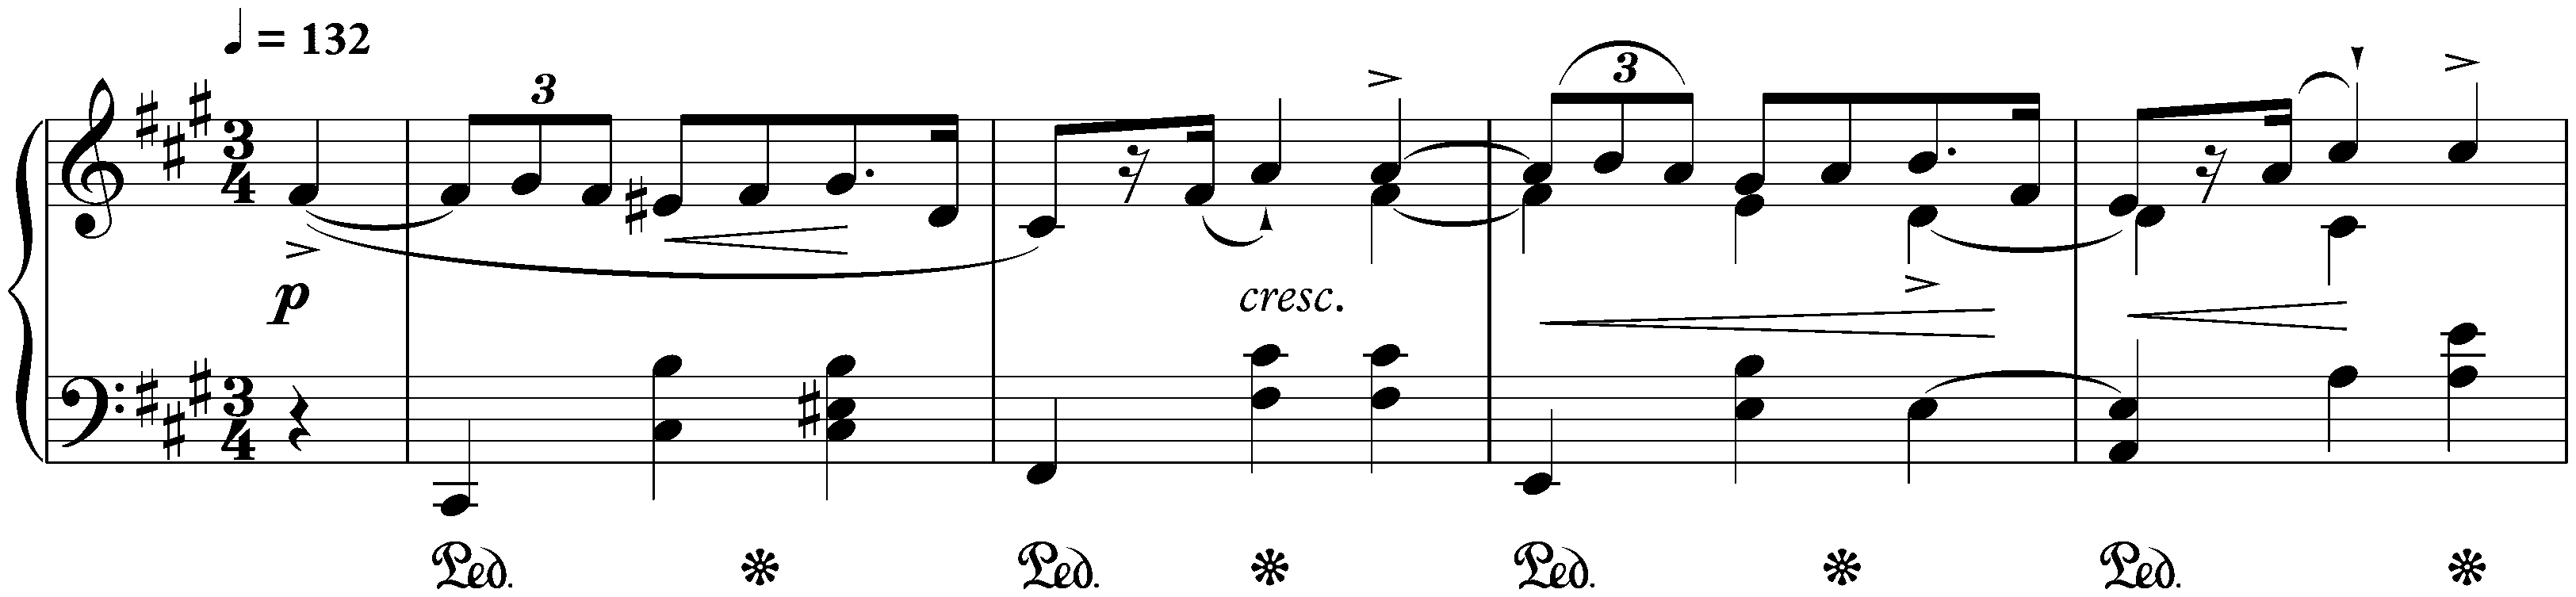 Four Mazurkas, op. 6; 1. F-sharp minor